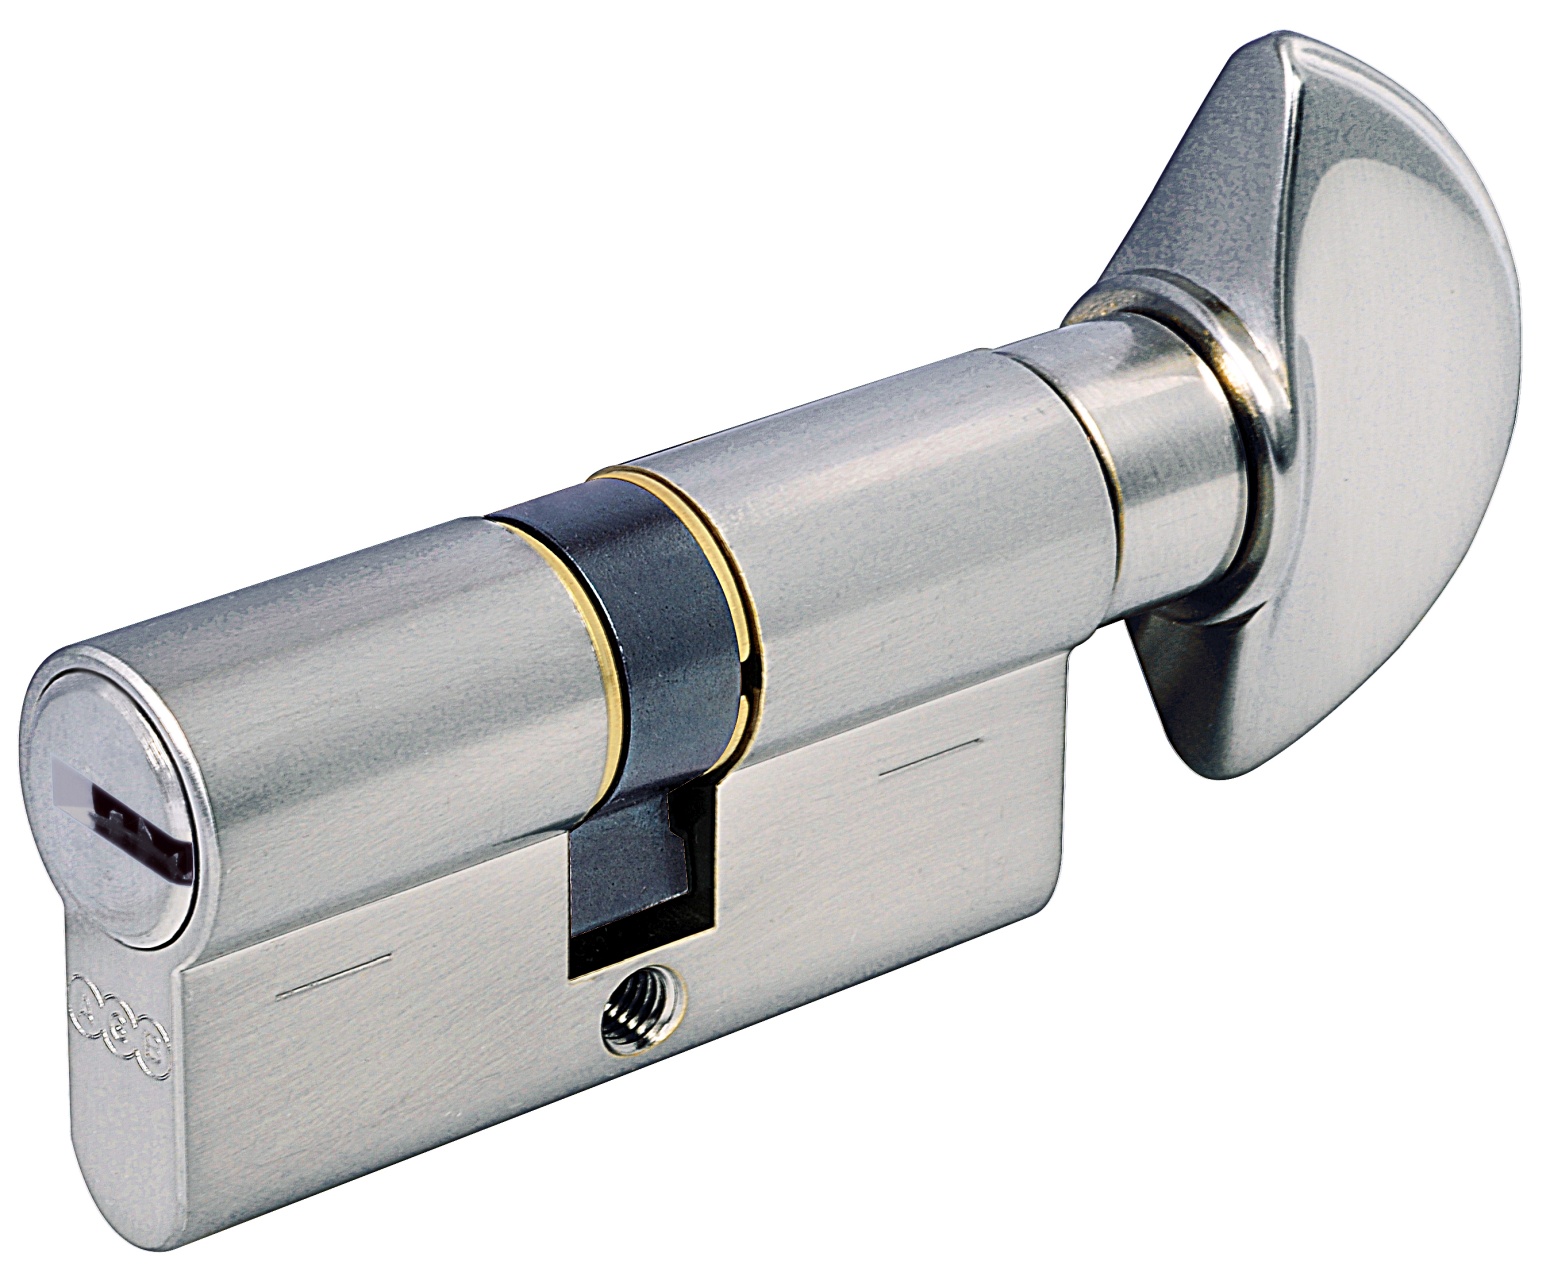 AGB -  Cilindro SCUDO 5000 PS frizionato anti bamping con chiave e pomolo - col. NICHELATO OPACO - lunghezza 90 - misura 50-10-30P -